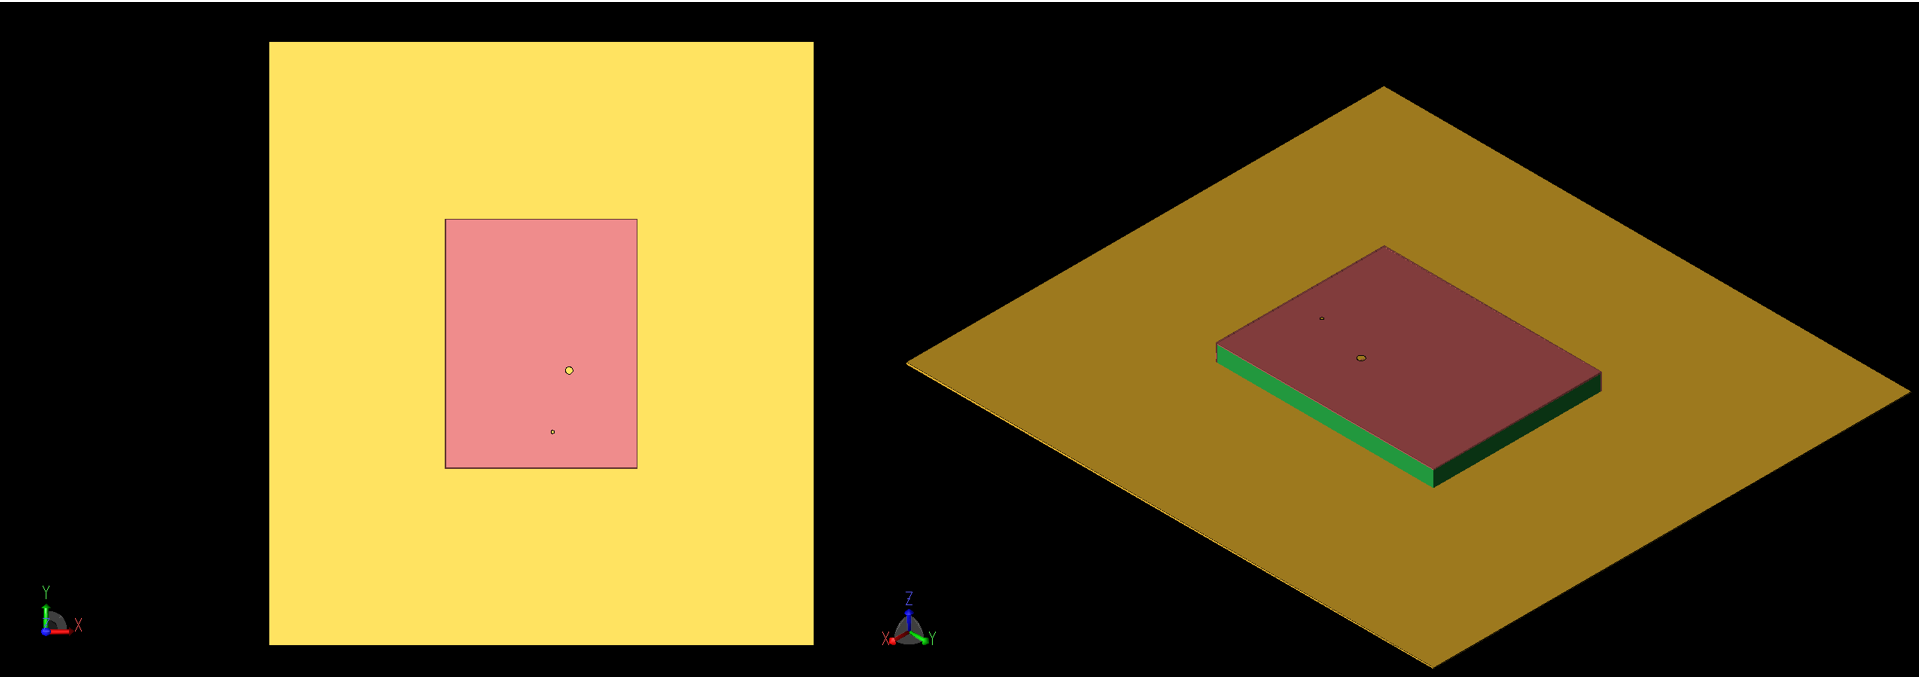 図1：パッチアンテナ形状の上面図（左、1a）と斜視図（右、1b）。同軸フィードとビアは、パッチ上部の大小の円として見える。パッチの-X側と-Y側はグランドプレーンに短絡されている。